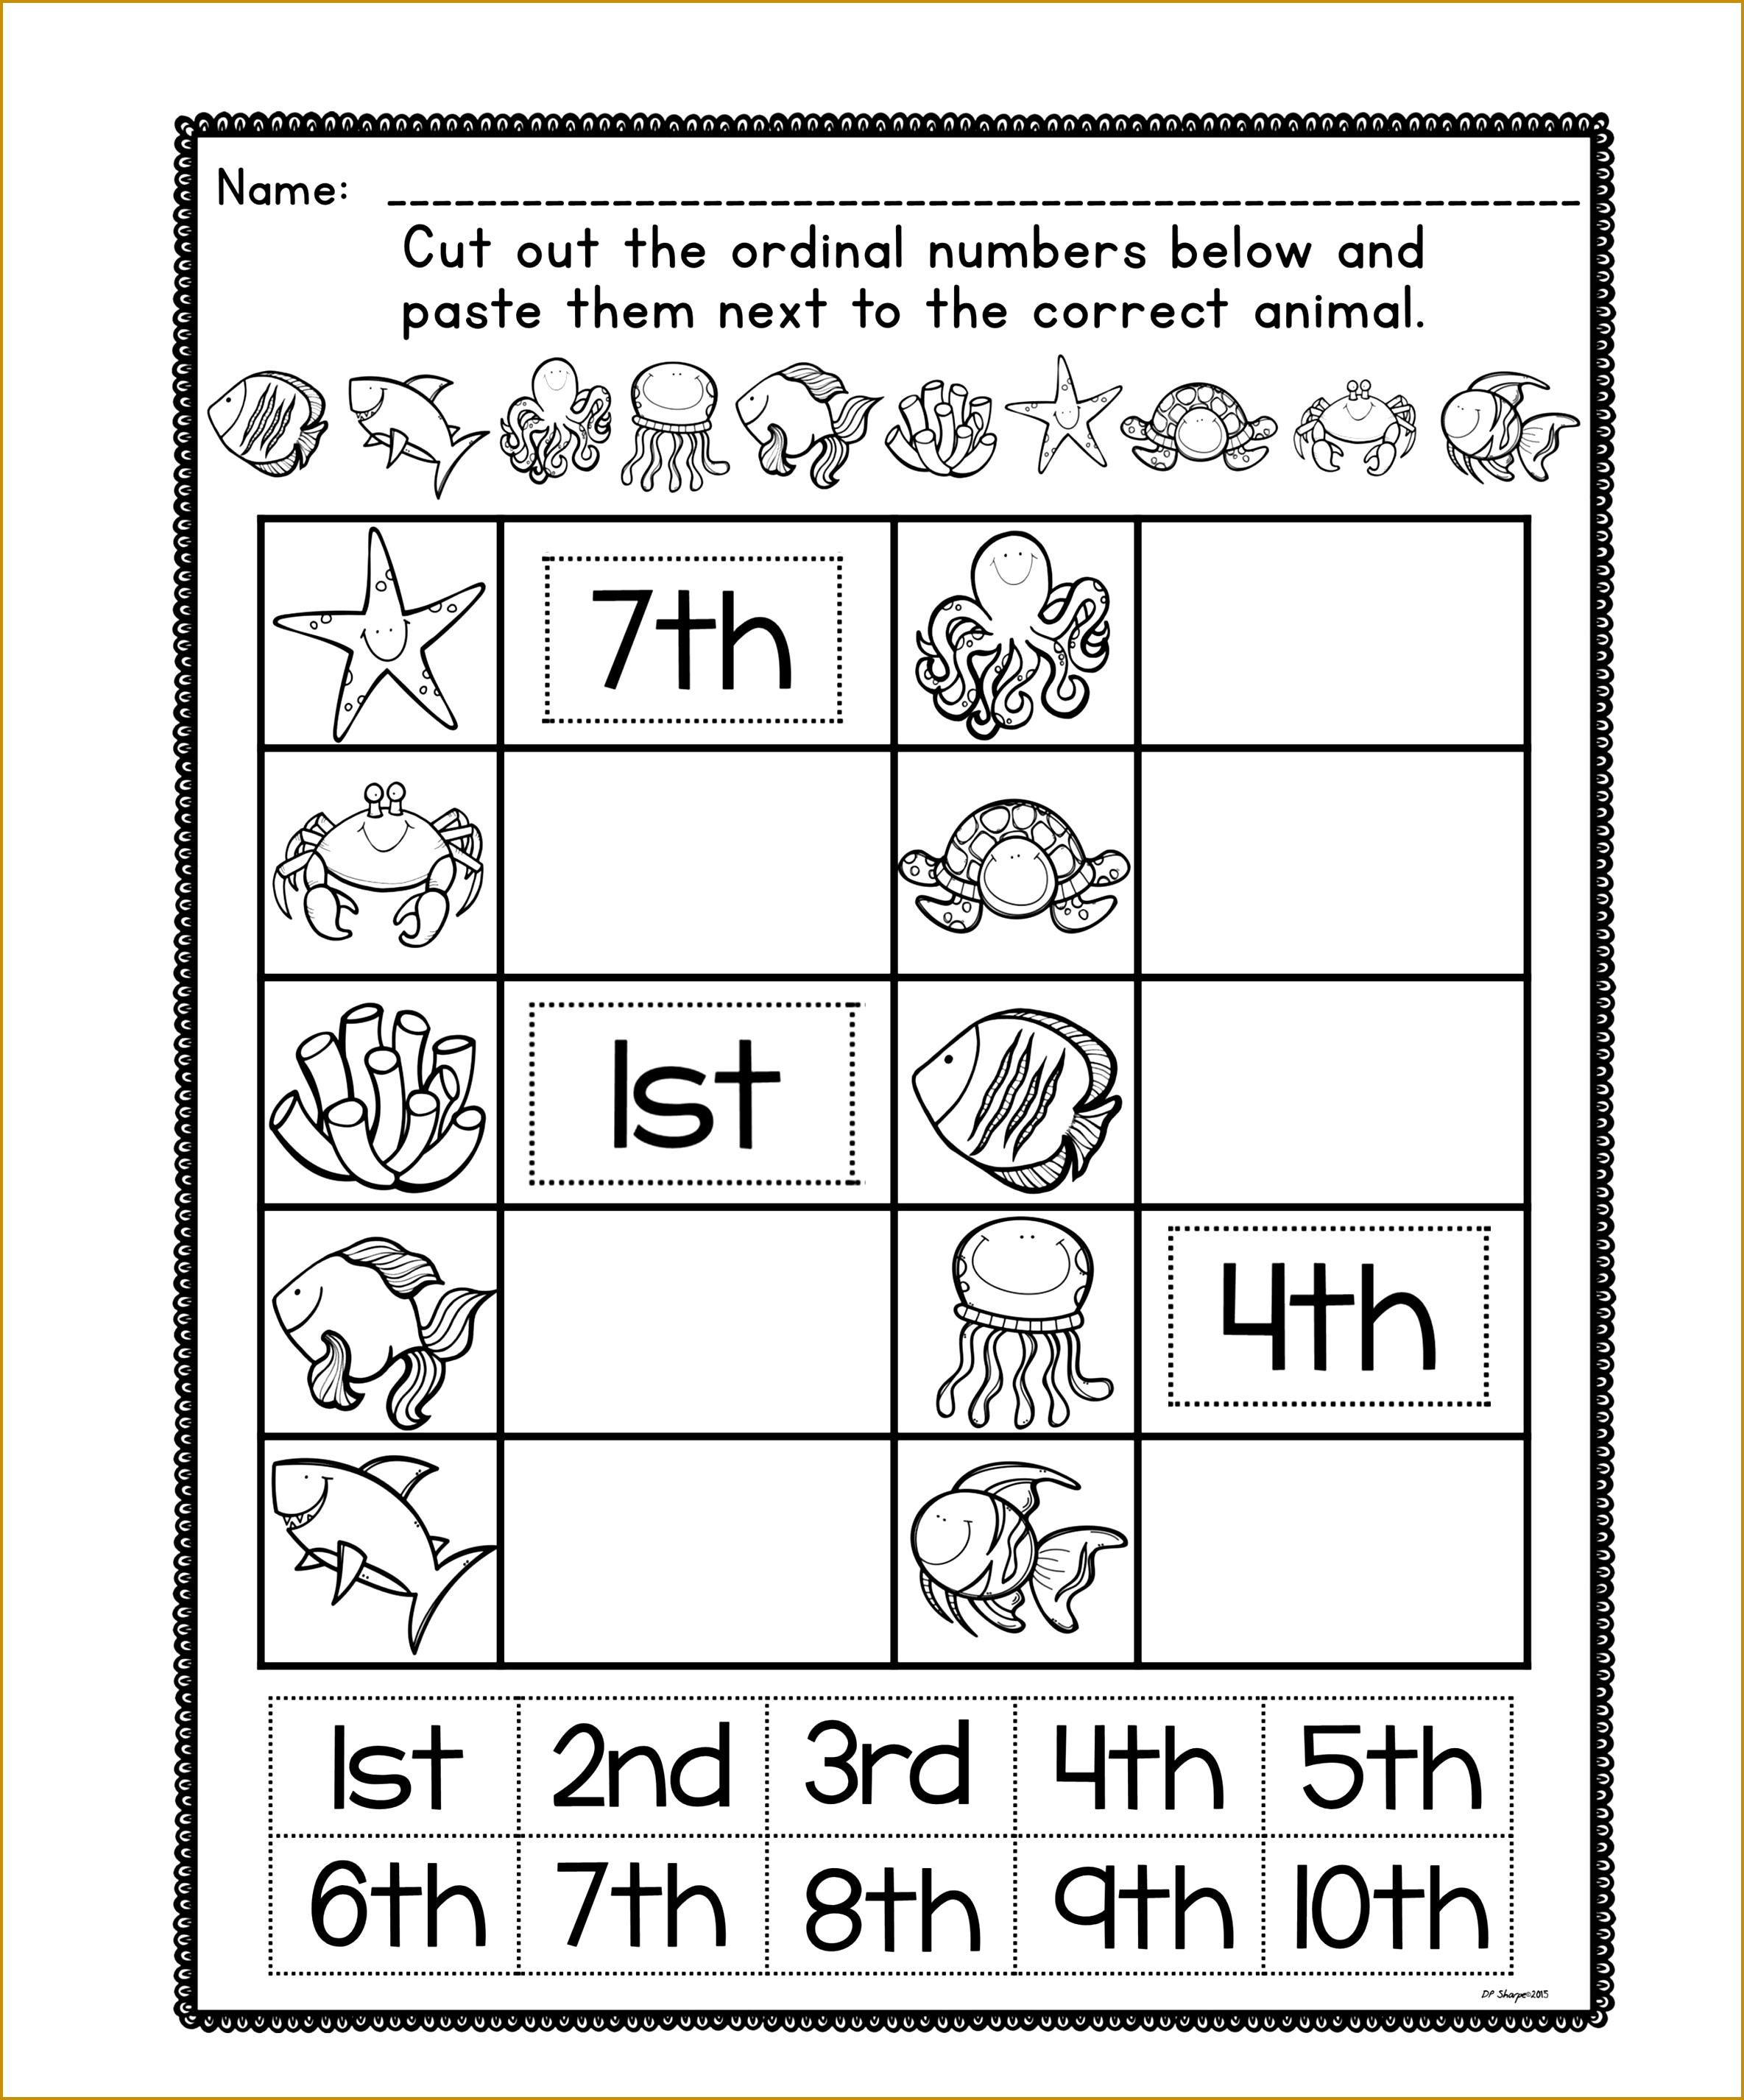 5-preschool-math-worksheets-fabtemplatez-ordinal-numbers-worksheets-2-ordinal-numbers-number